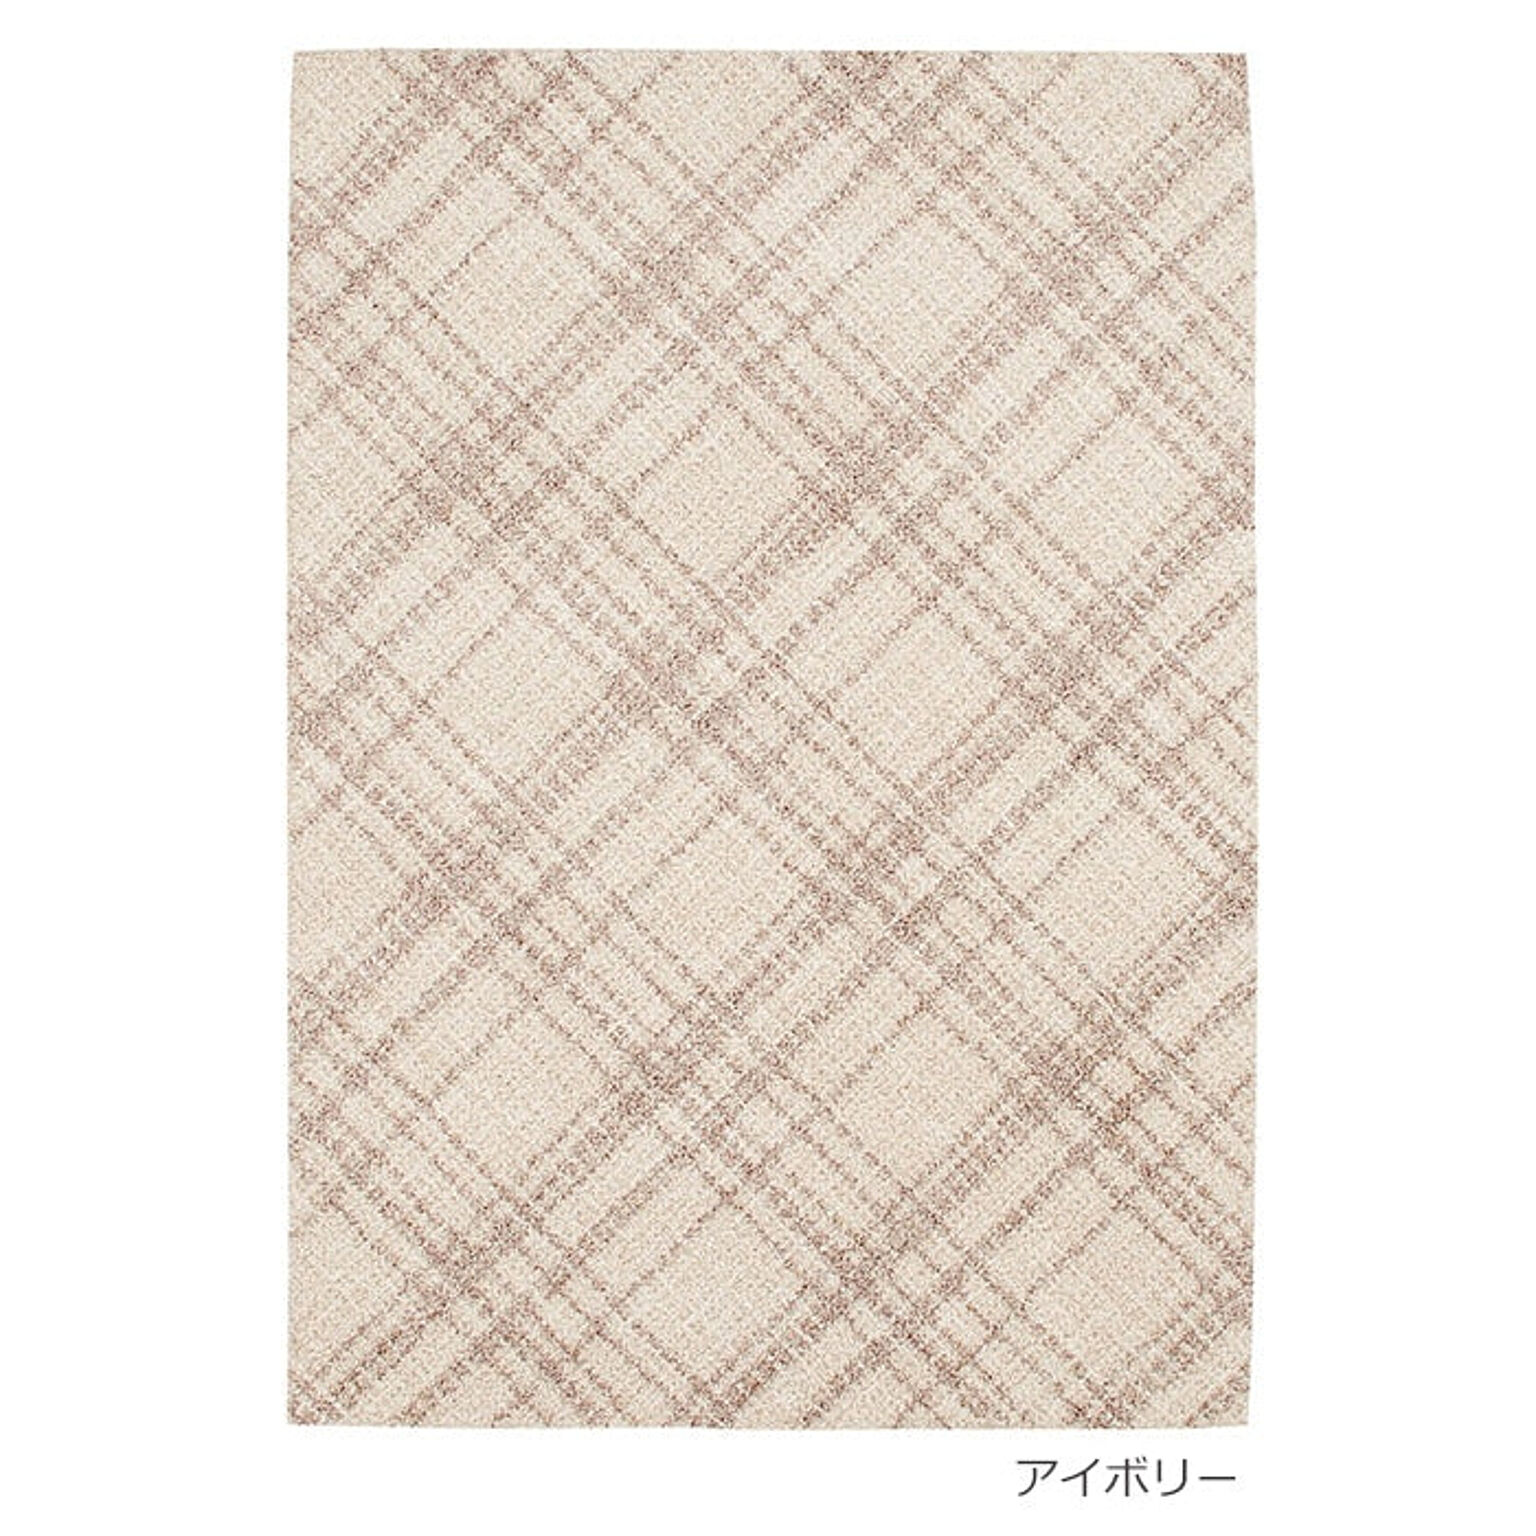 ラグ ラグマット 絨毯 日本製 カーペット Prevell プレーベル オドレイ 約200×250cm チェック柄 北欧 デザイン ナイロン 格子柄 チェック柄 引っ越し 新生活